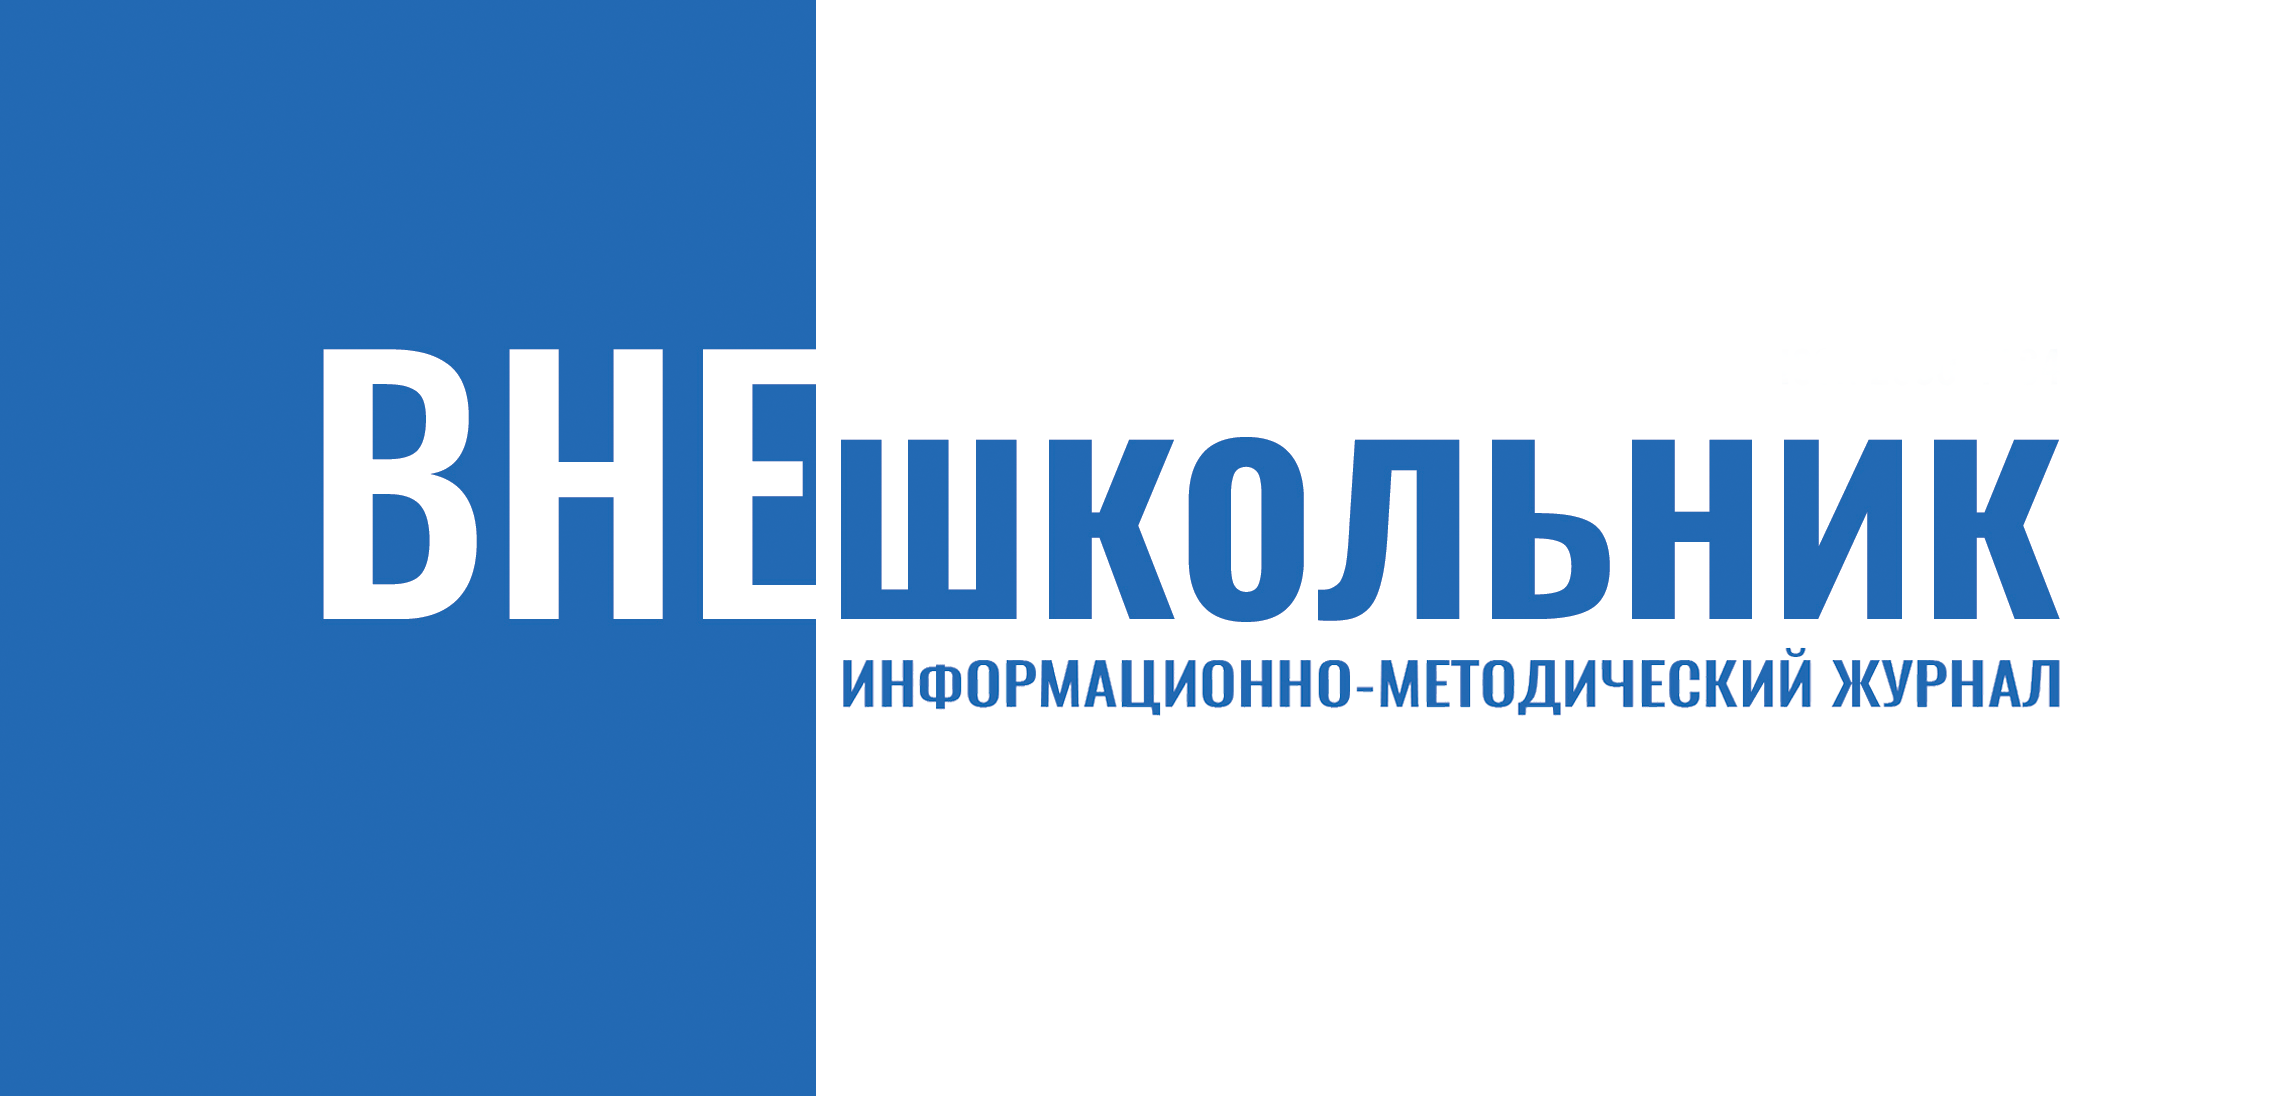 Логотип ВНЕшкольник